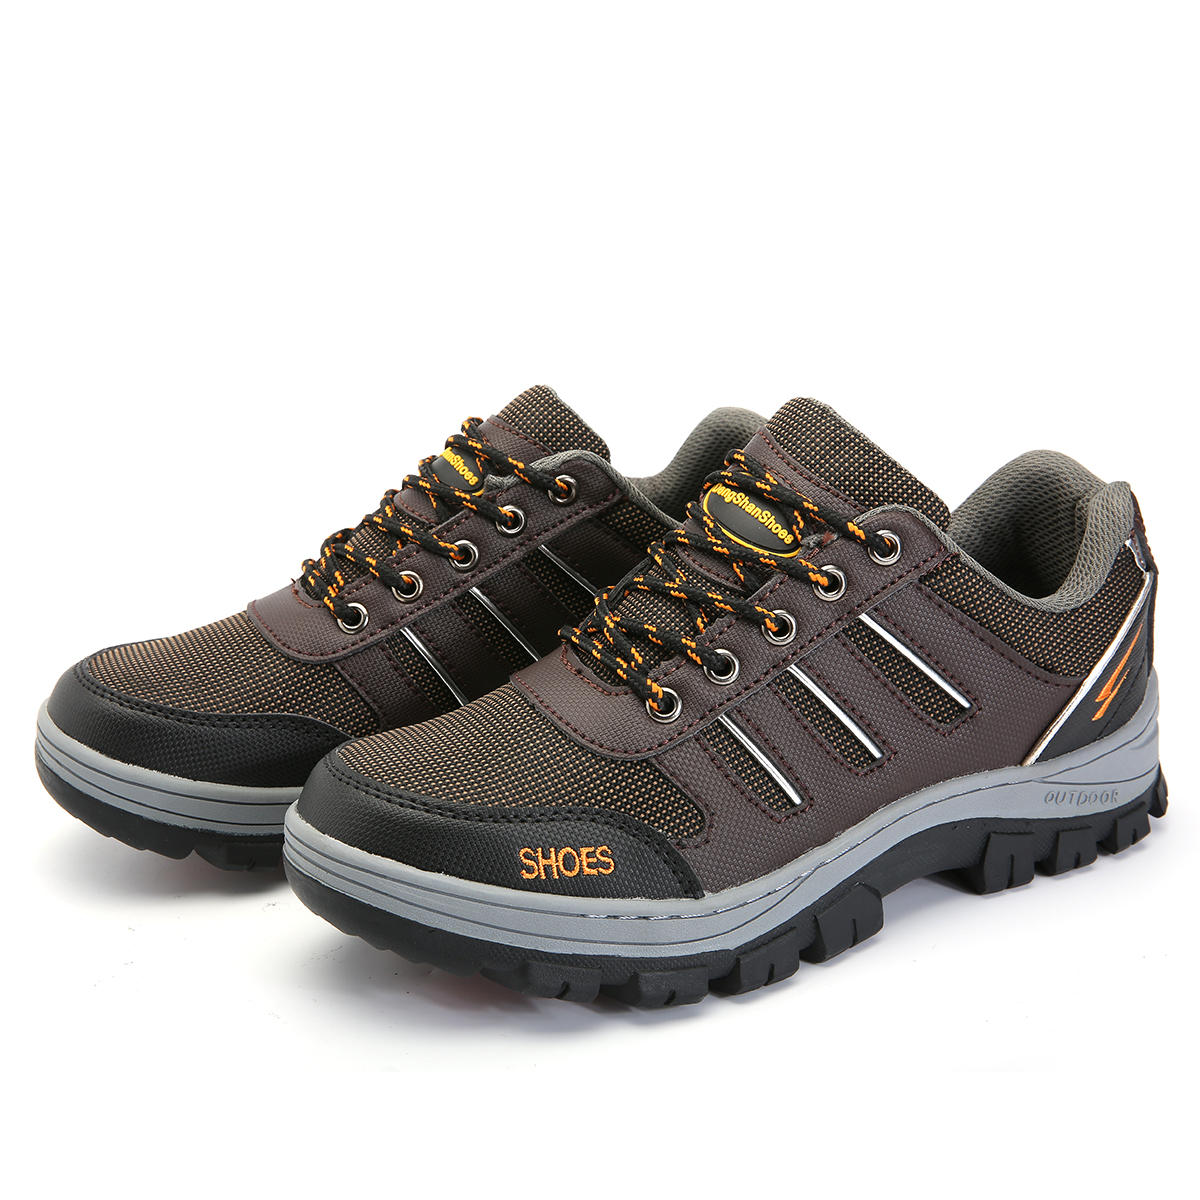 Chaussures de sécurité pour hommes Tengoo avec embout en acier, baskets de course et de randonnée antidérapantes et imperméables